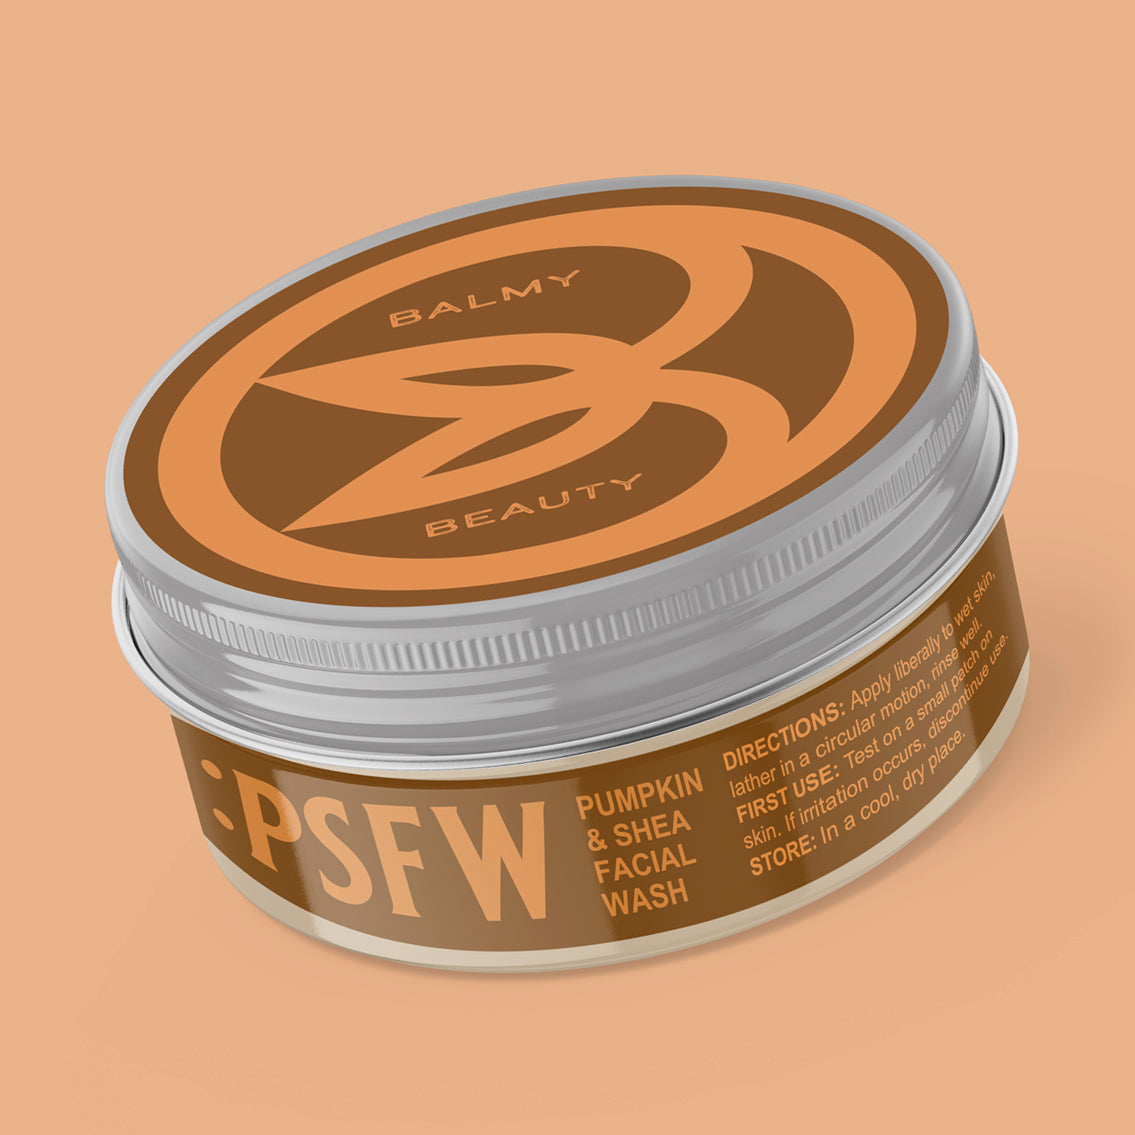 PSFW: Organic Pumpkin & Shea Facial Wash